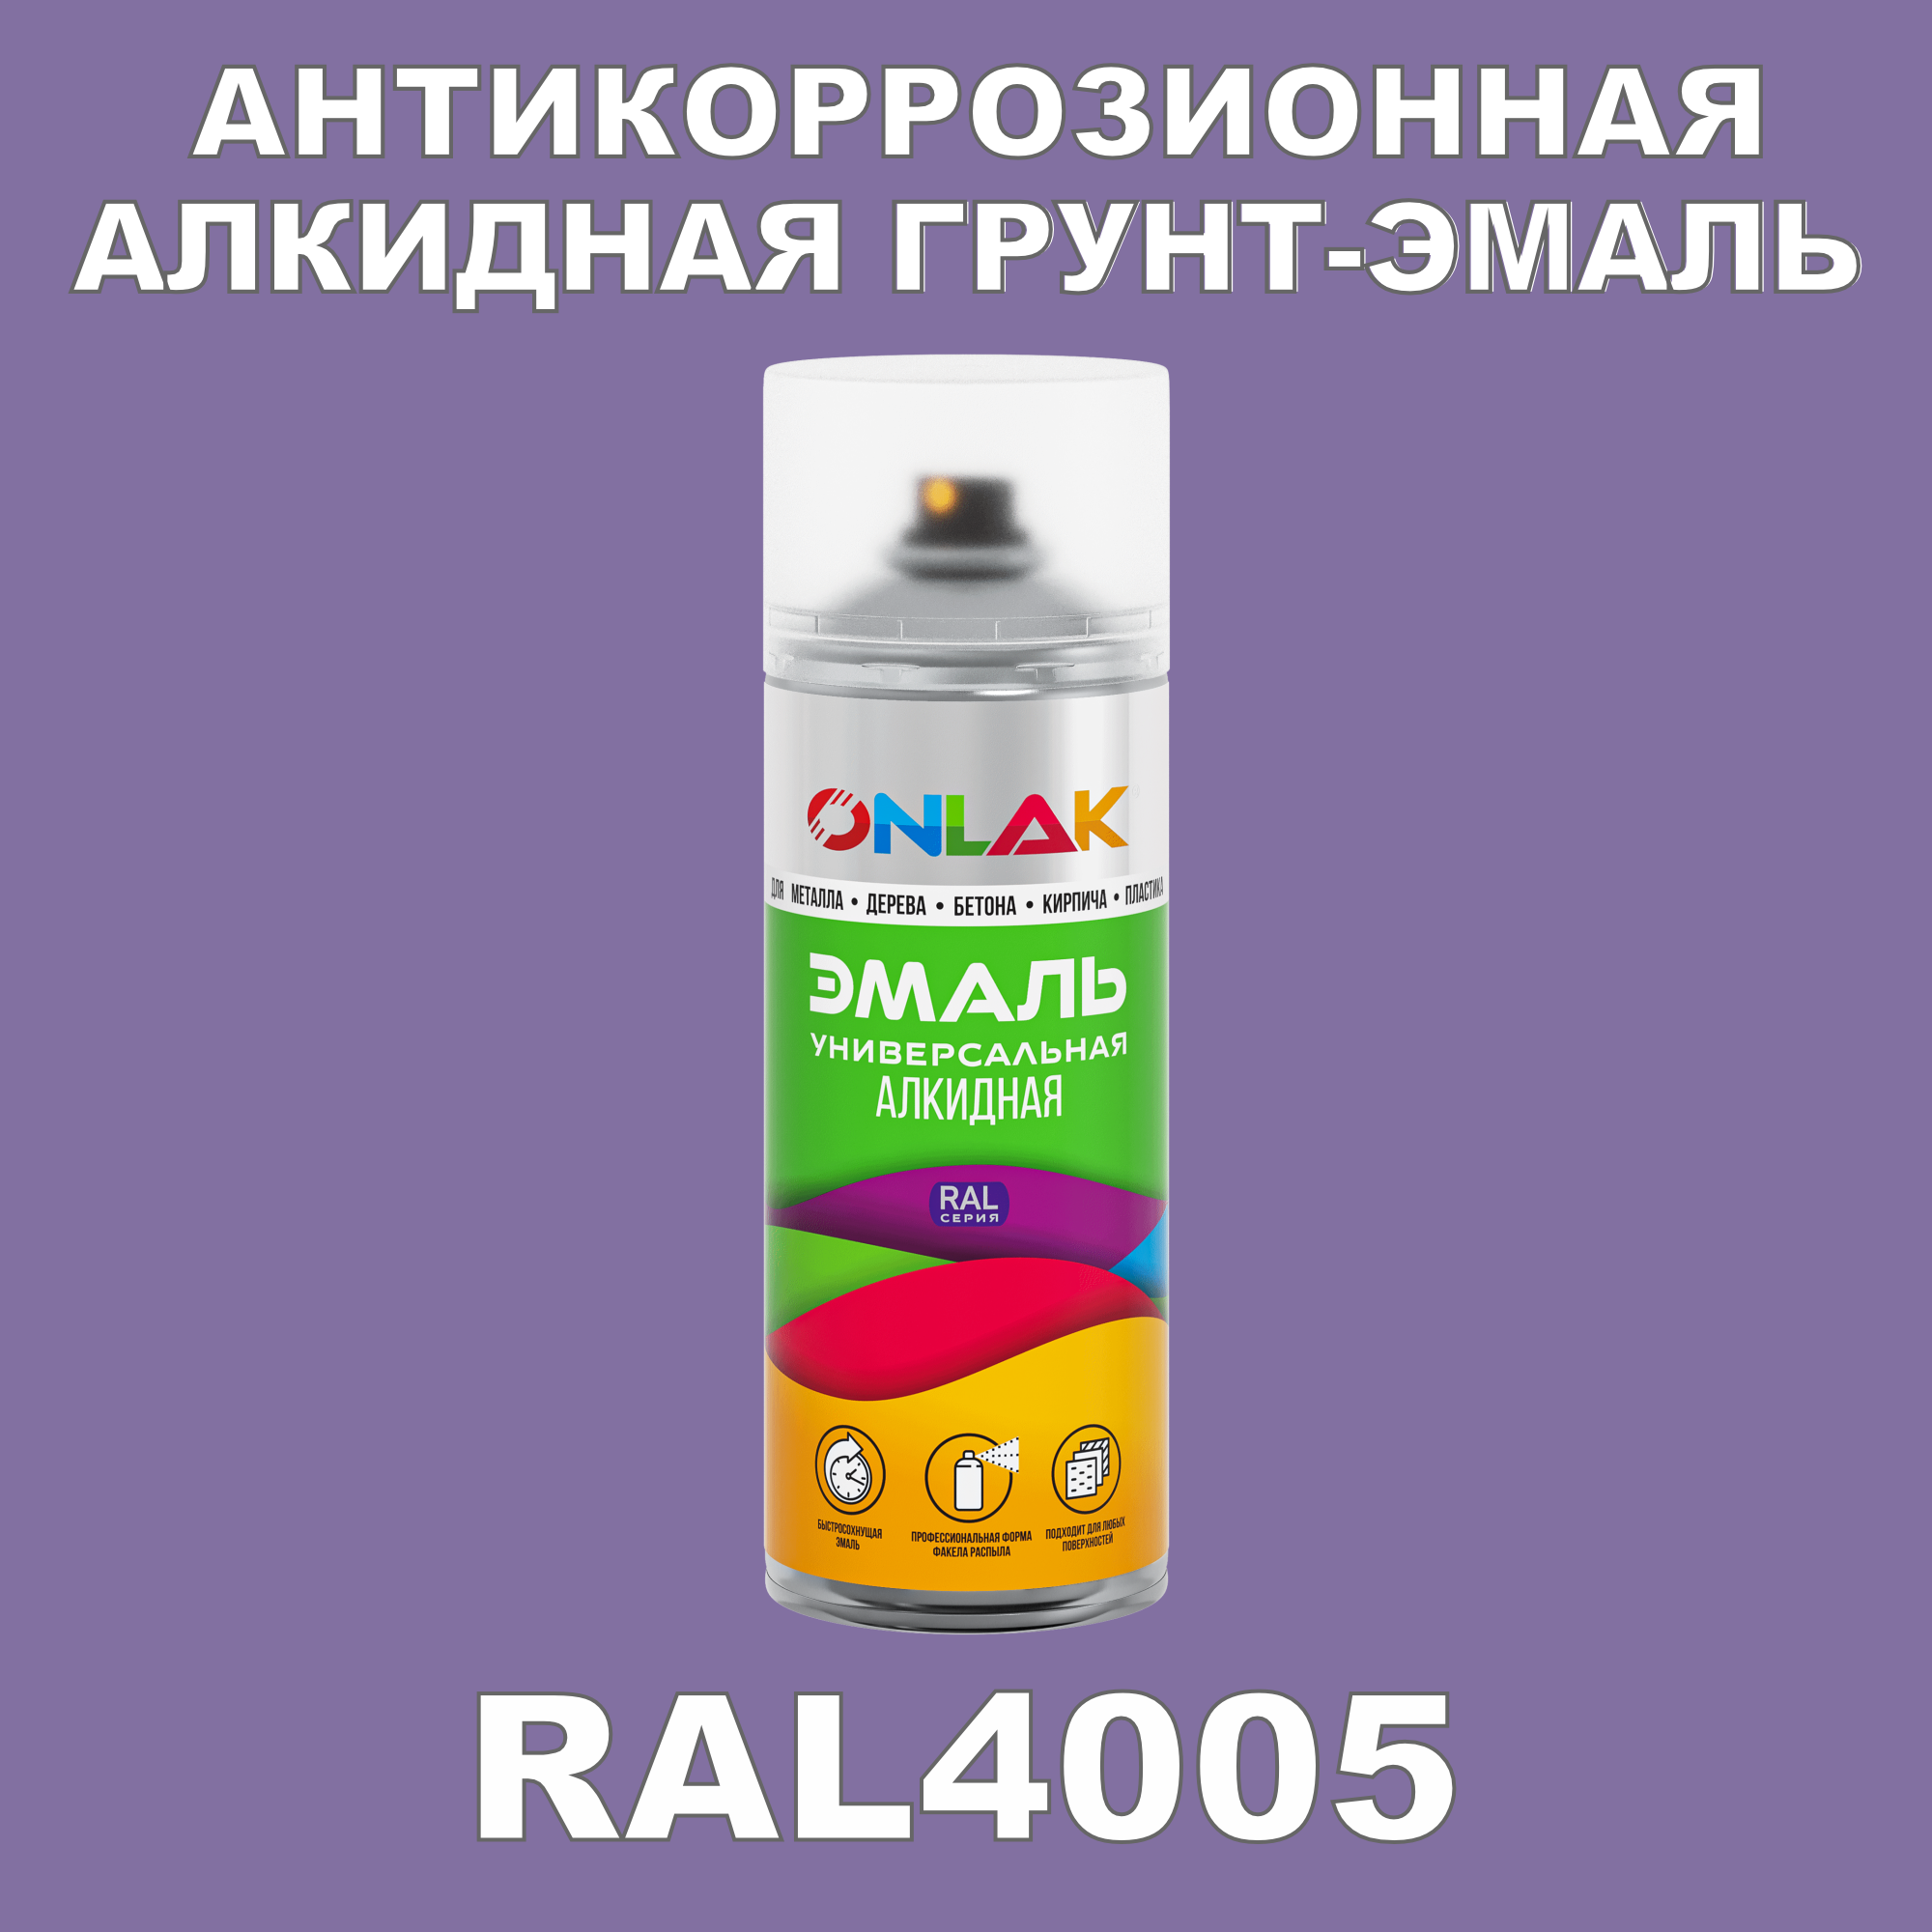 Антикоррозионная грунт-эмаль ONLAK RAL 4005,фиолетовый,662 мл ремень женский ширина 3 5 см пряжка металл цвет фиолетовый